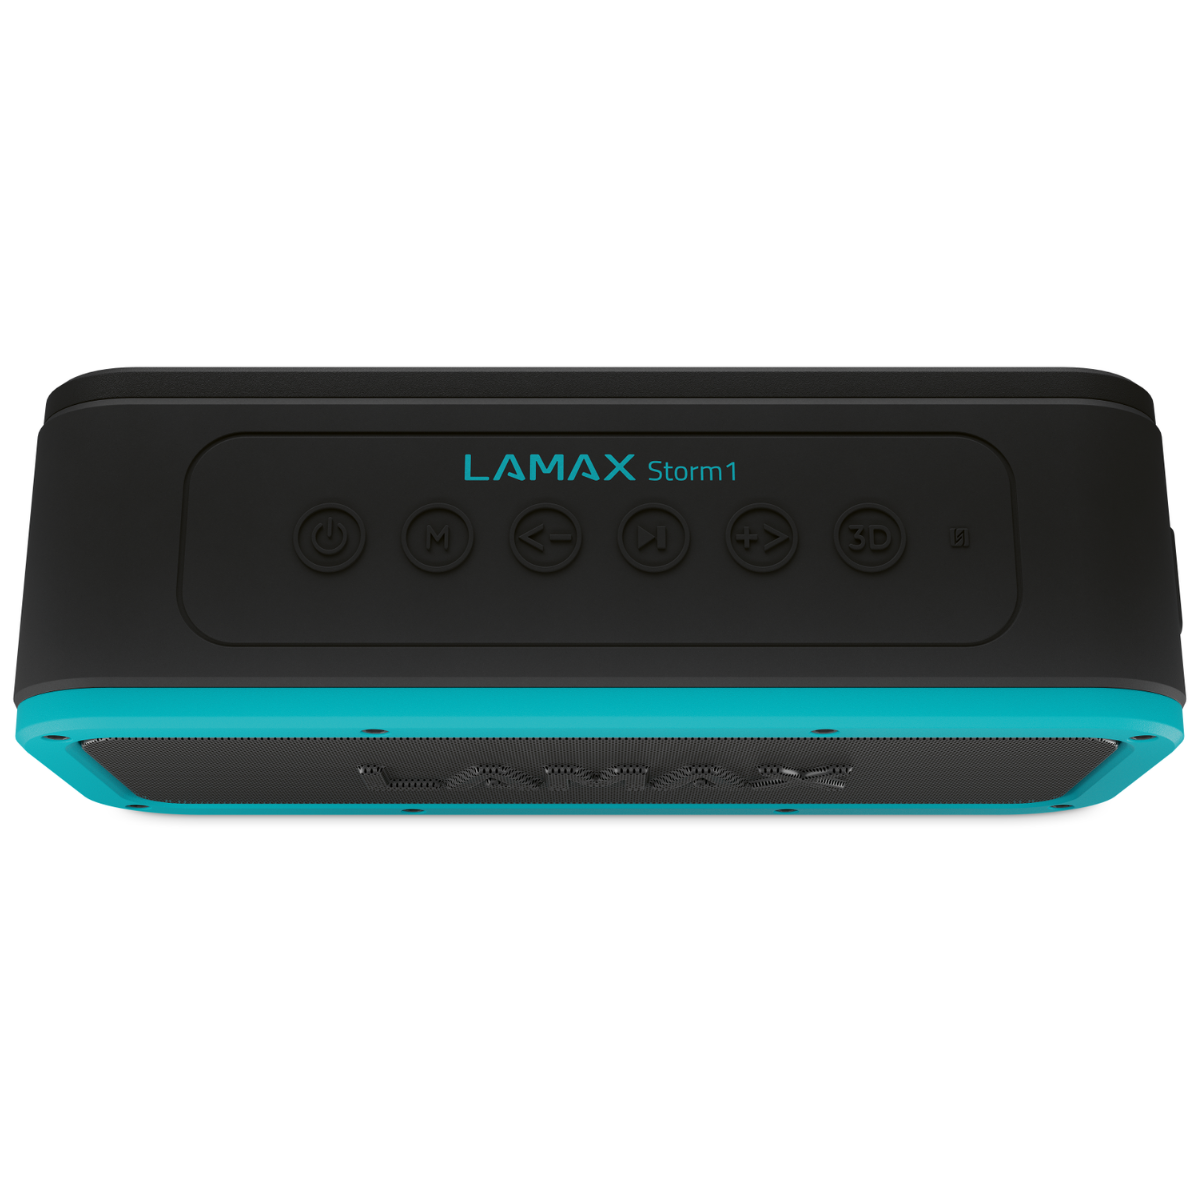 LAMAX Storm1 Lautsprecher, schwarz